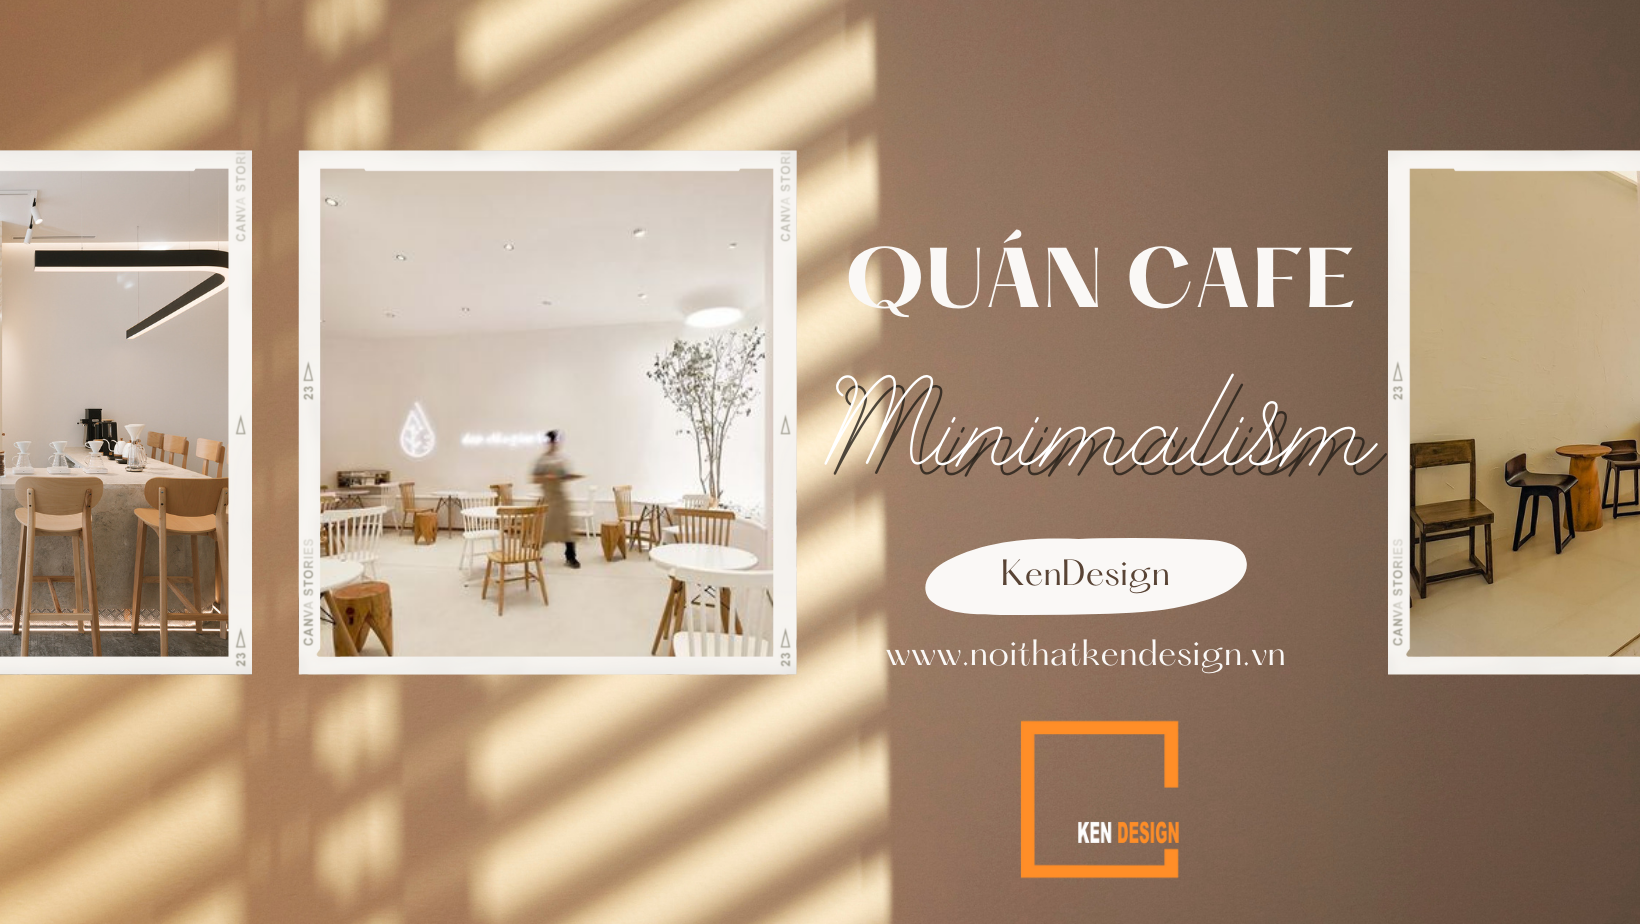 Quán cafe phong cách minimalism đặc biệt như thế nào?